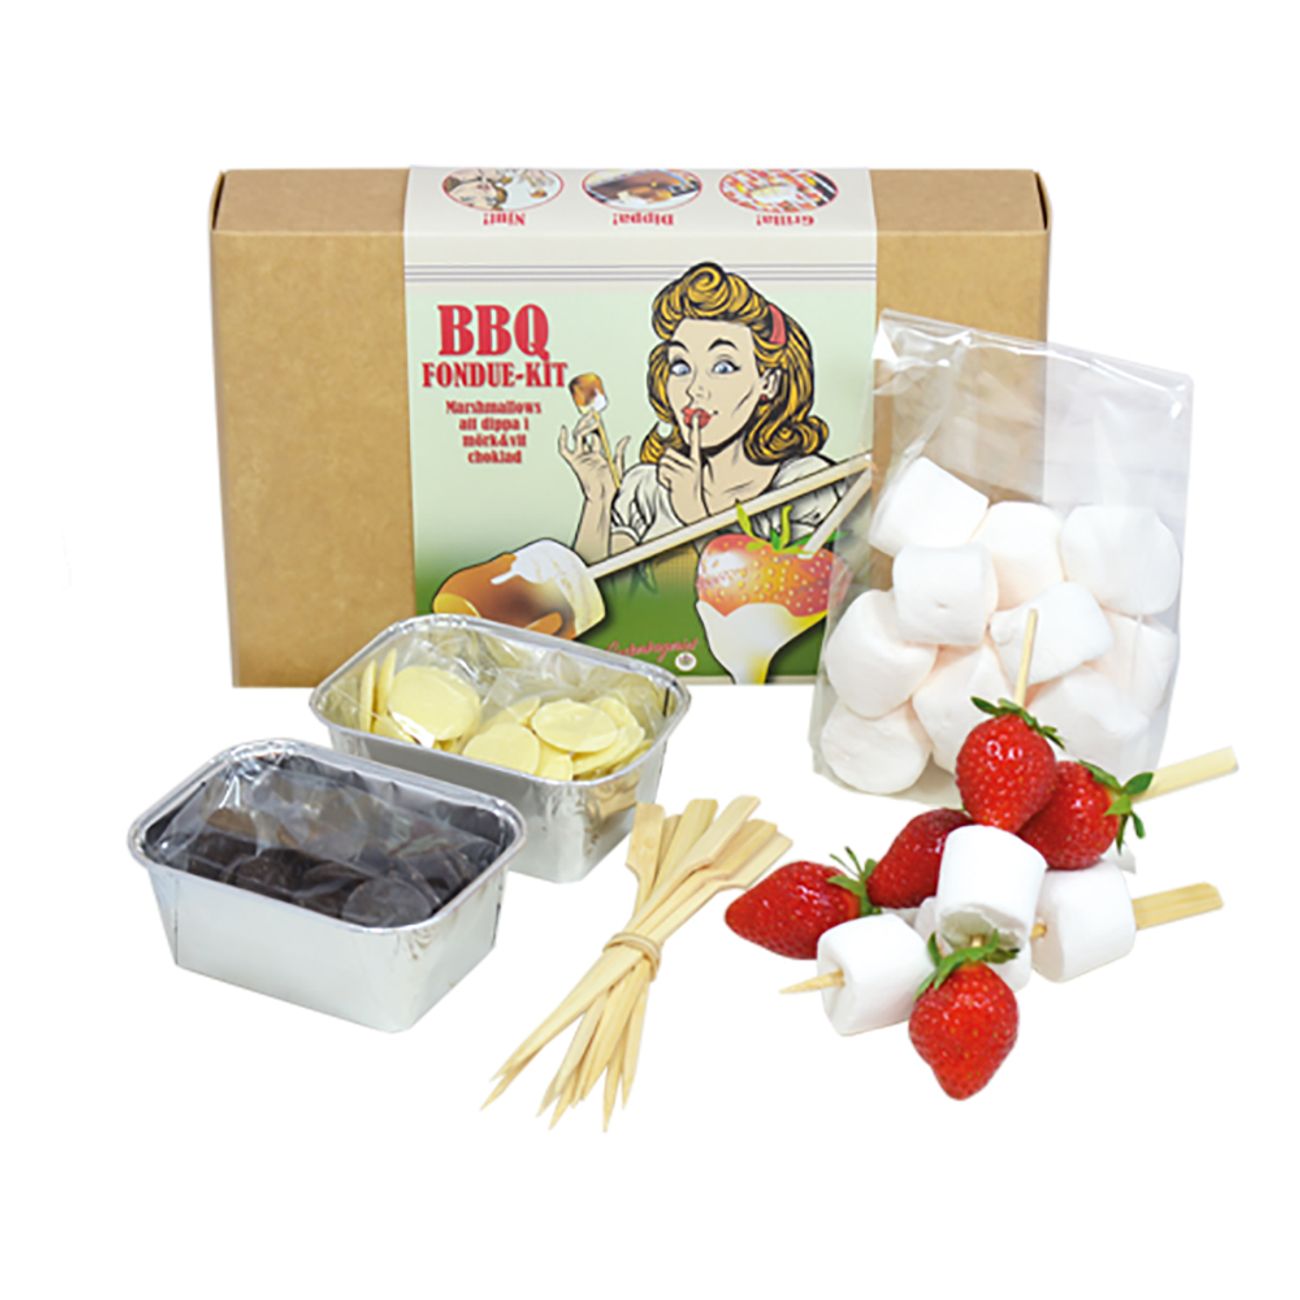 bbq-fondue-kit-75181-1